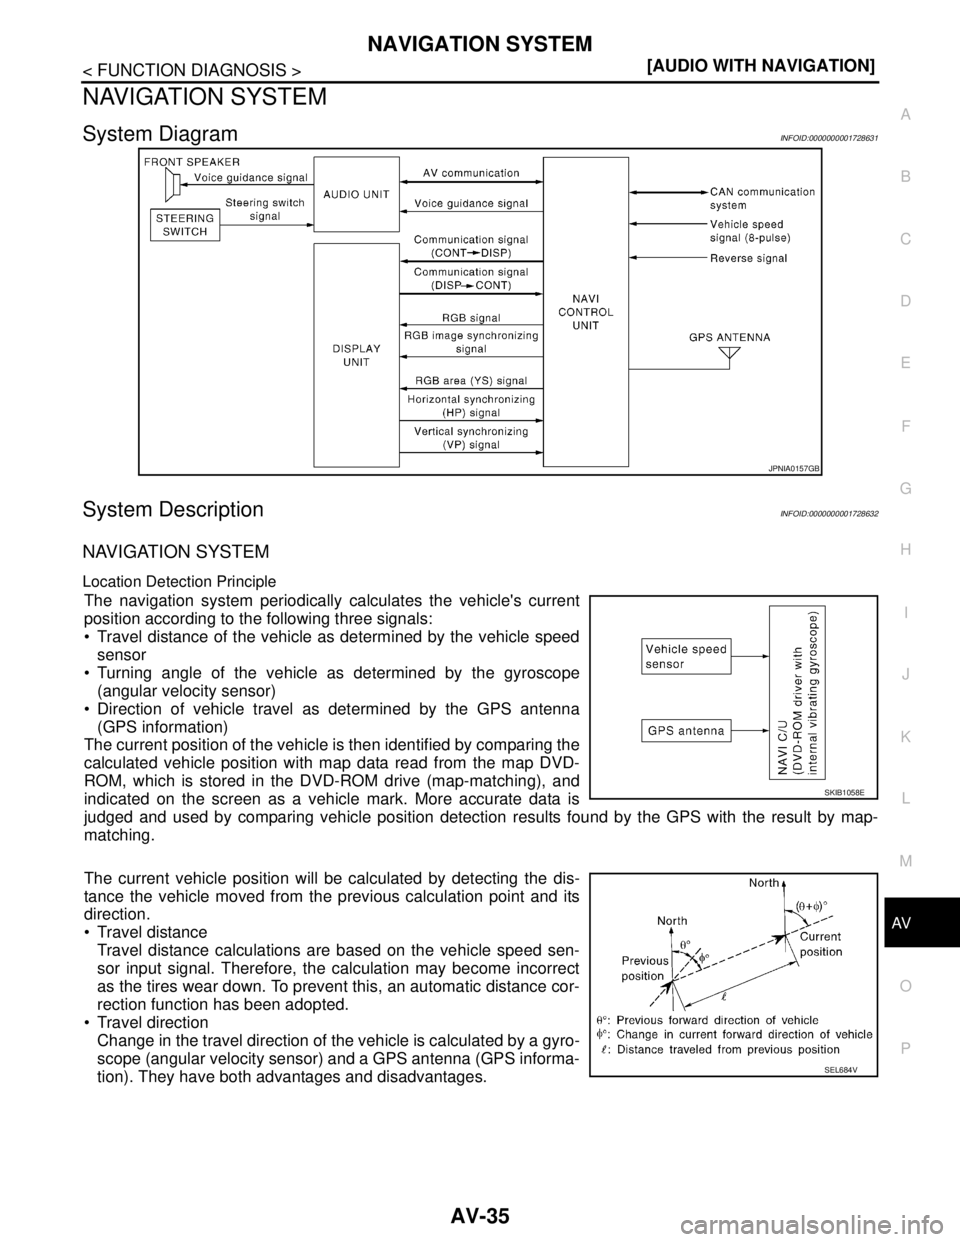 NISSAN TIIDA 2007  Service Repair Manual AV
NAVIGATION SYSTEM
AV-35
< FUNCTION DIAGNOSIS >[AUDIO WITH NAVIGATION]
C
D
E
F
G
H
I
J
K
L
MB A
O
P
NAVIGATION SYSTEM
System DiagramINFOID:0000000001728631
System DescriptionINFOID:0000000001728632
